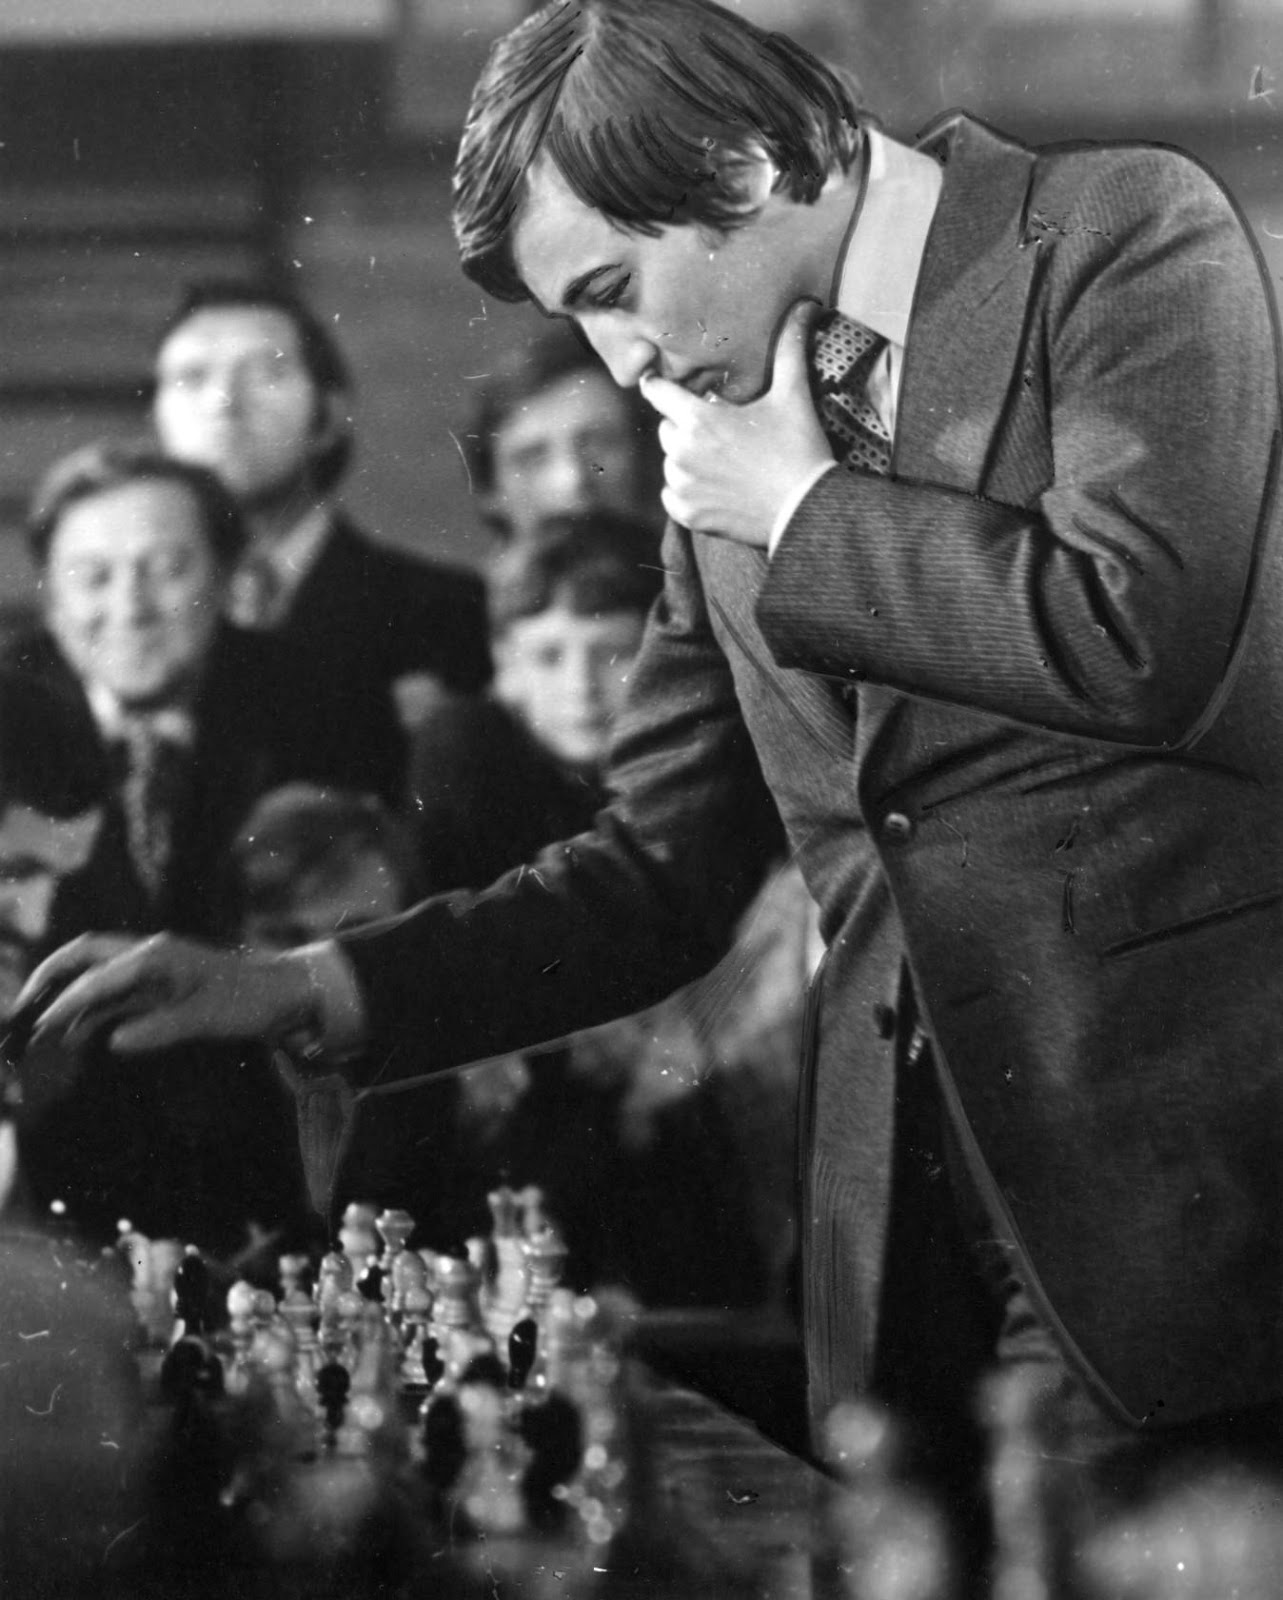 Anatoly Karpov, Everything Chess Wiki